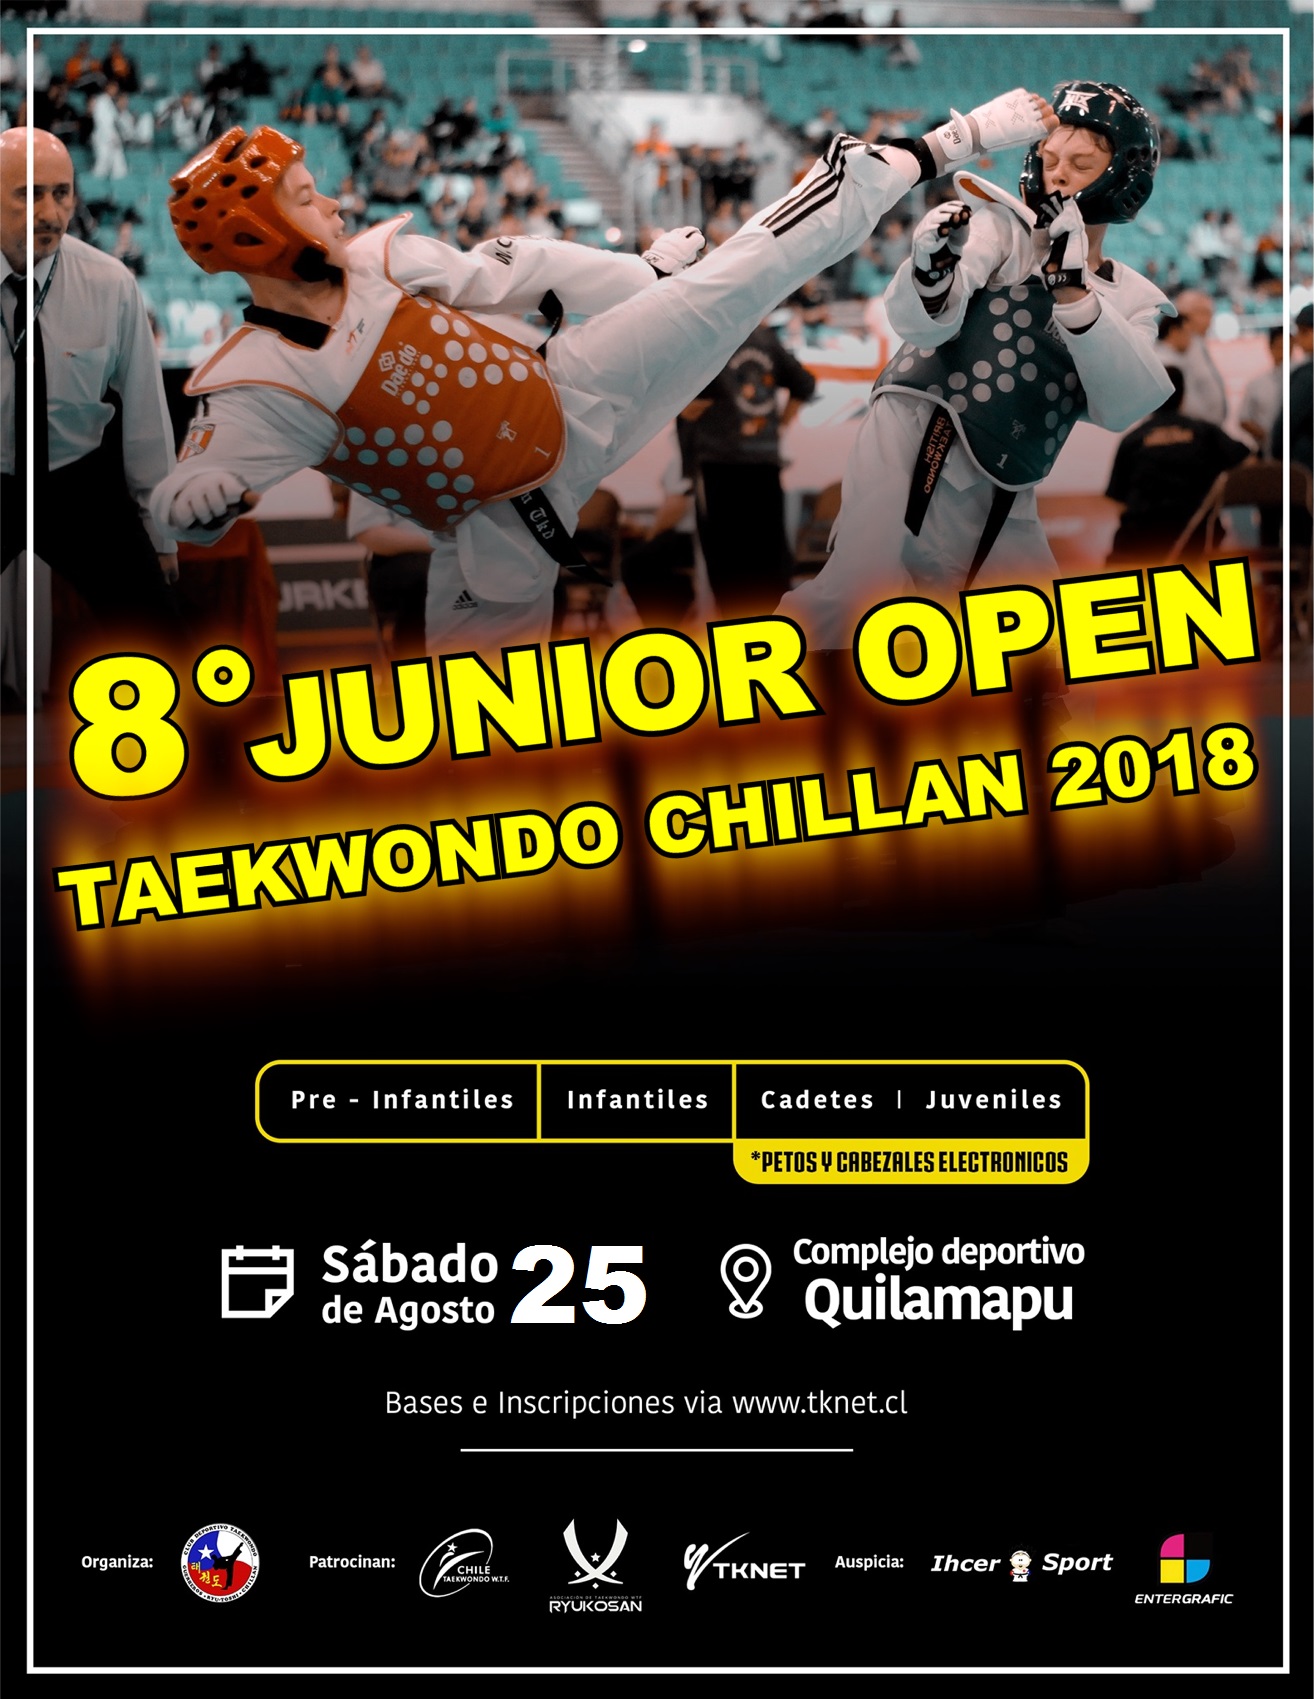 8° Junior Open Taekwondo Chillan 2018